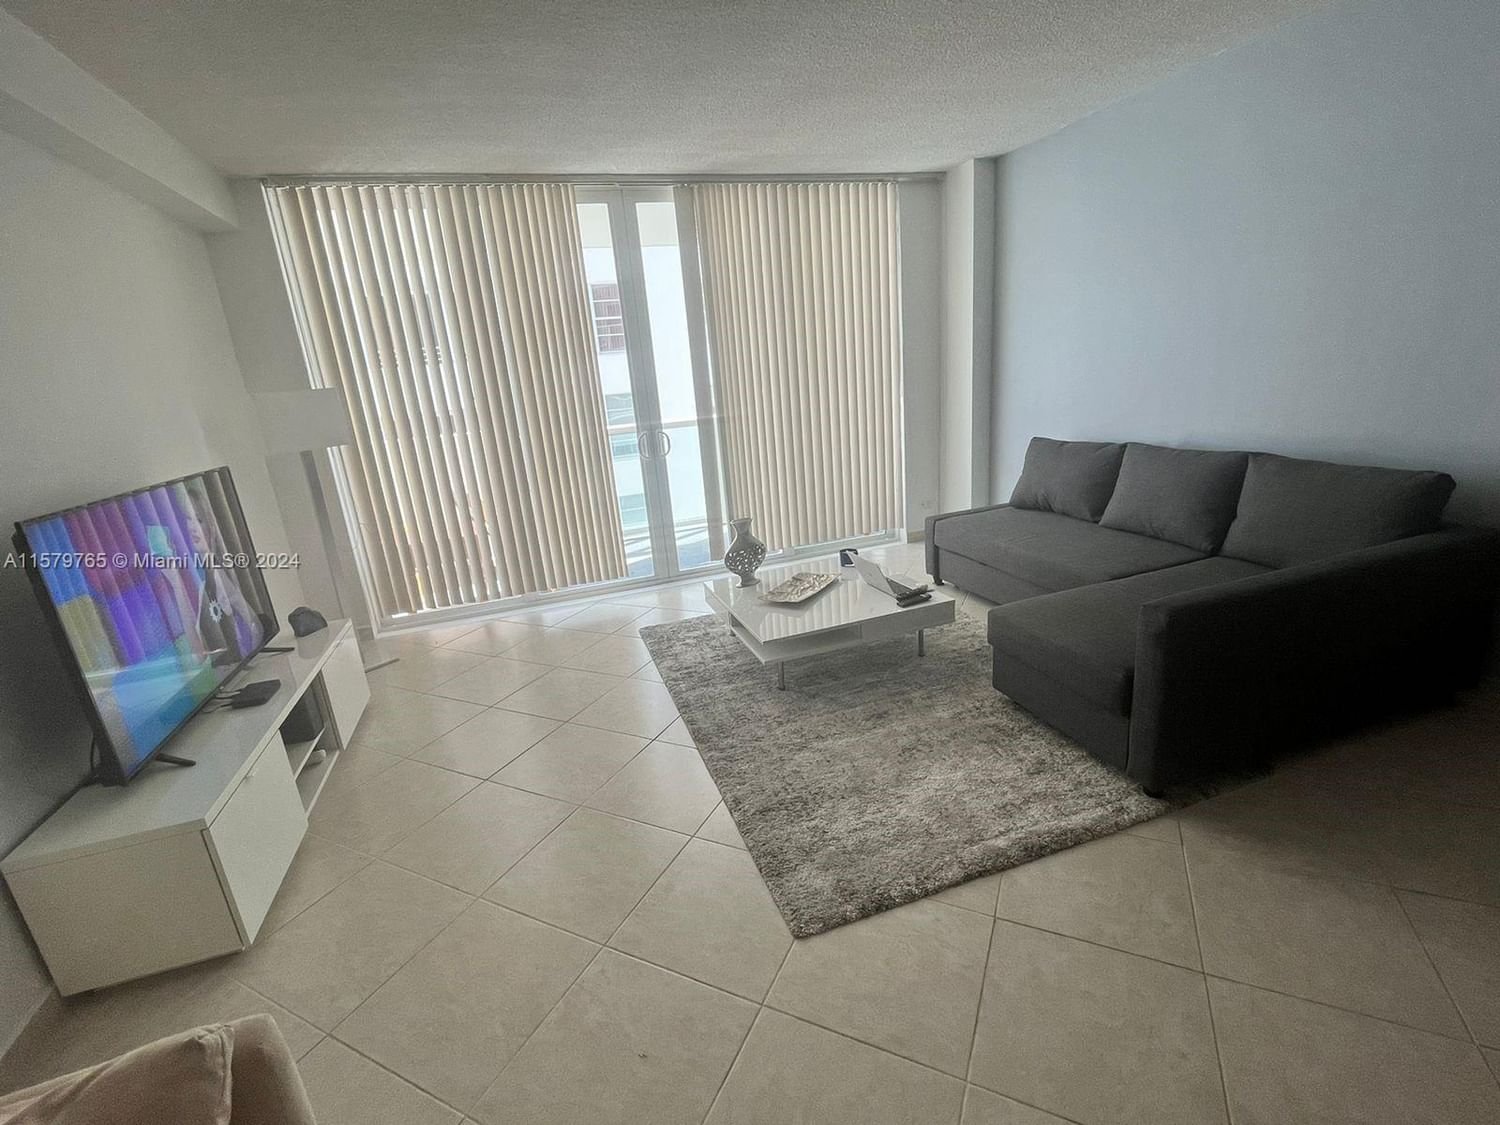 Real estate property located at , Miami-Dade County, THE PAVILION CONDO, Miami Beach, FL